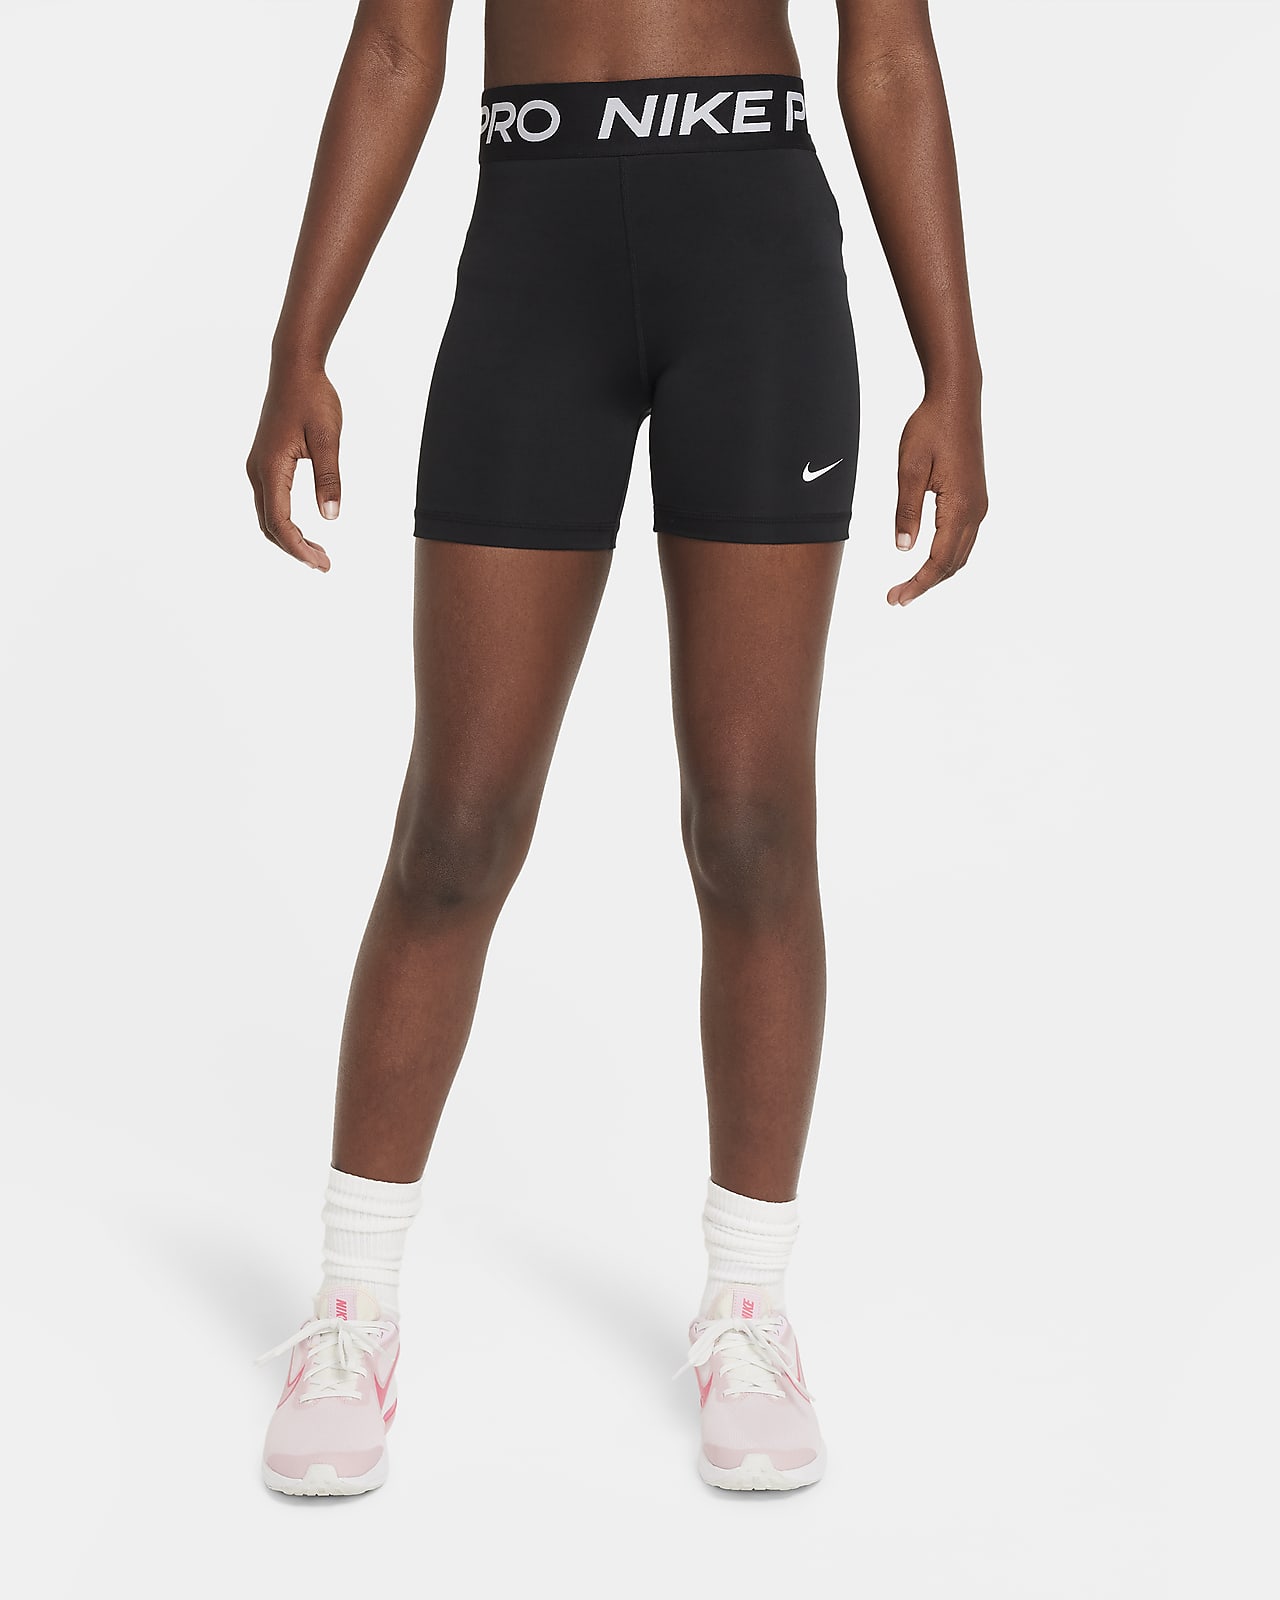 กางเกงขาสั้นเด็กโต Nike Pro (หญิง)